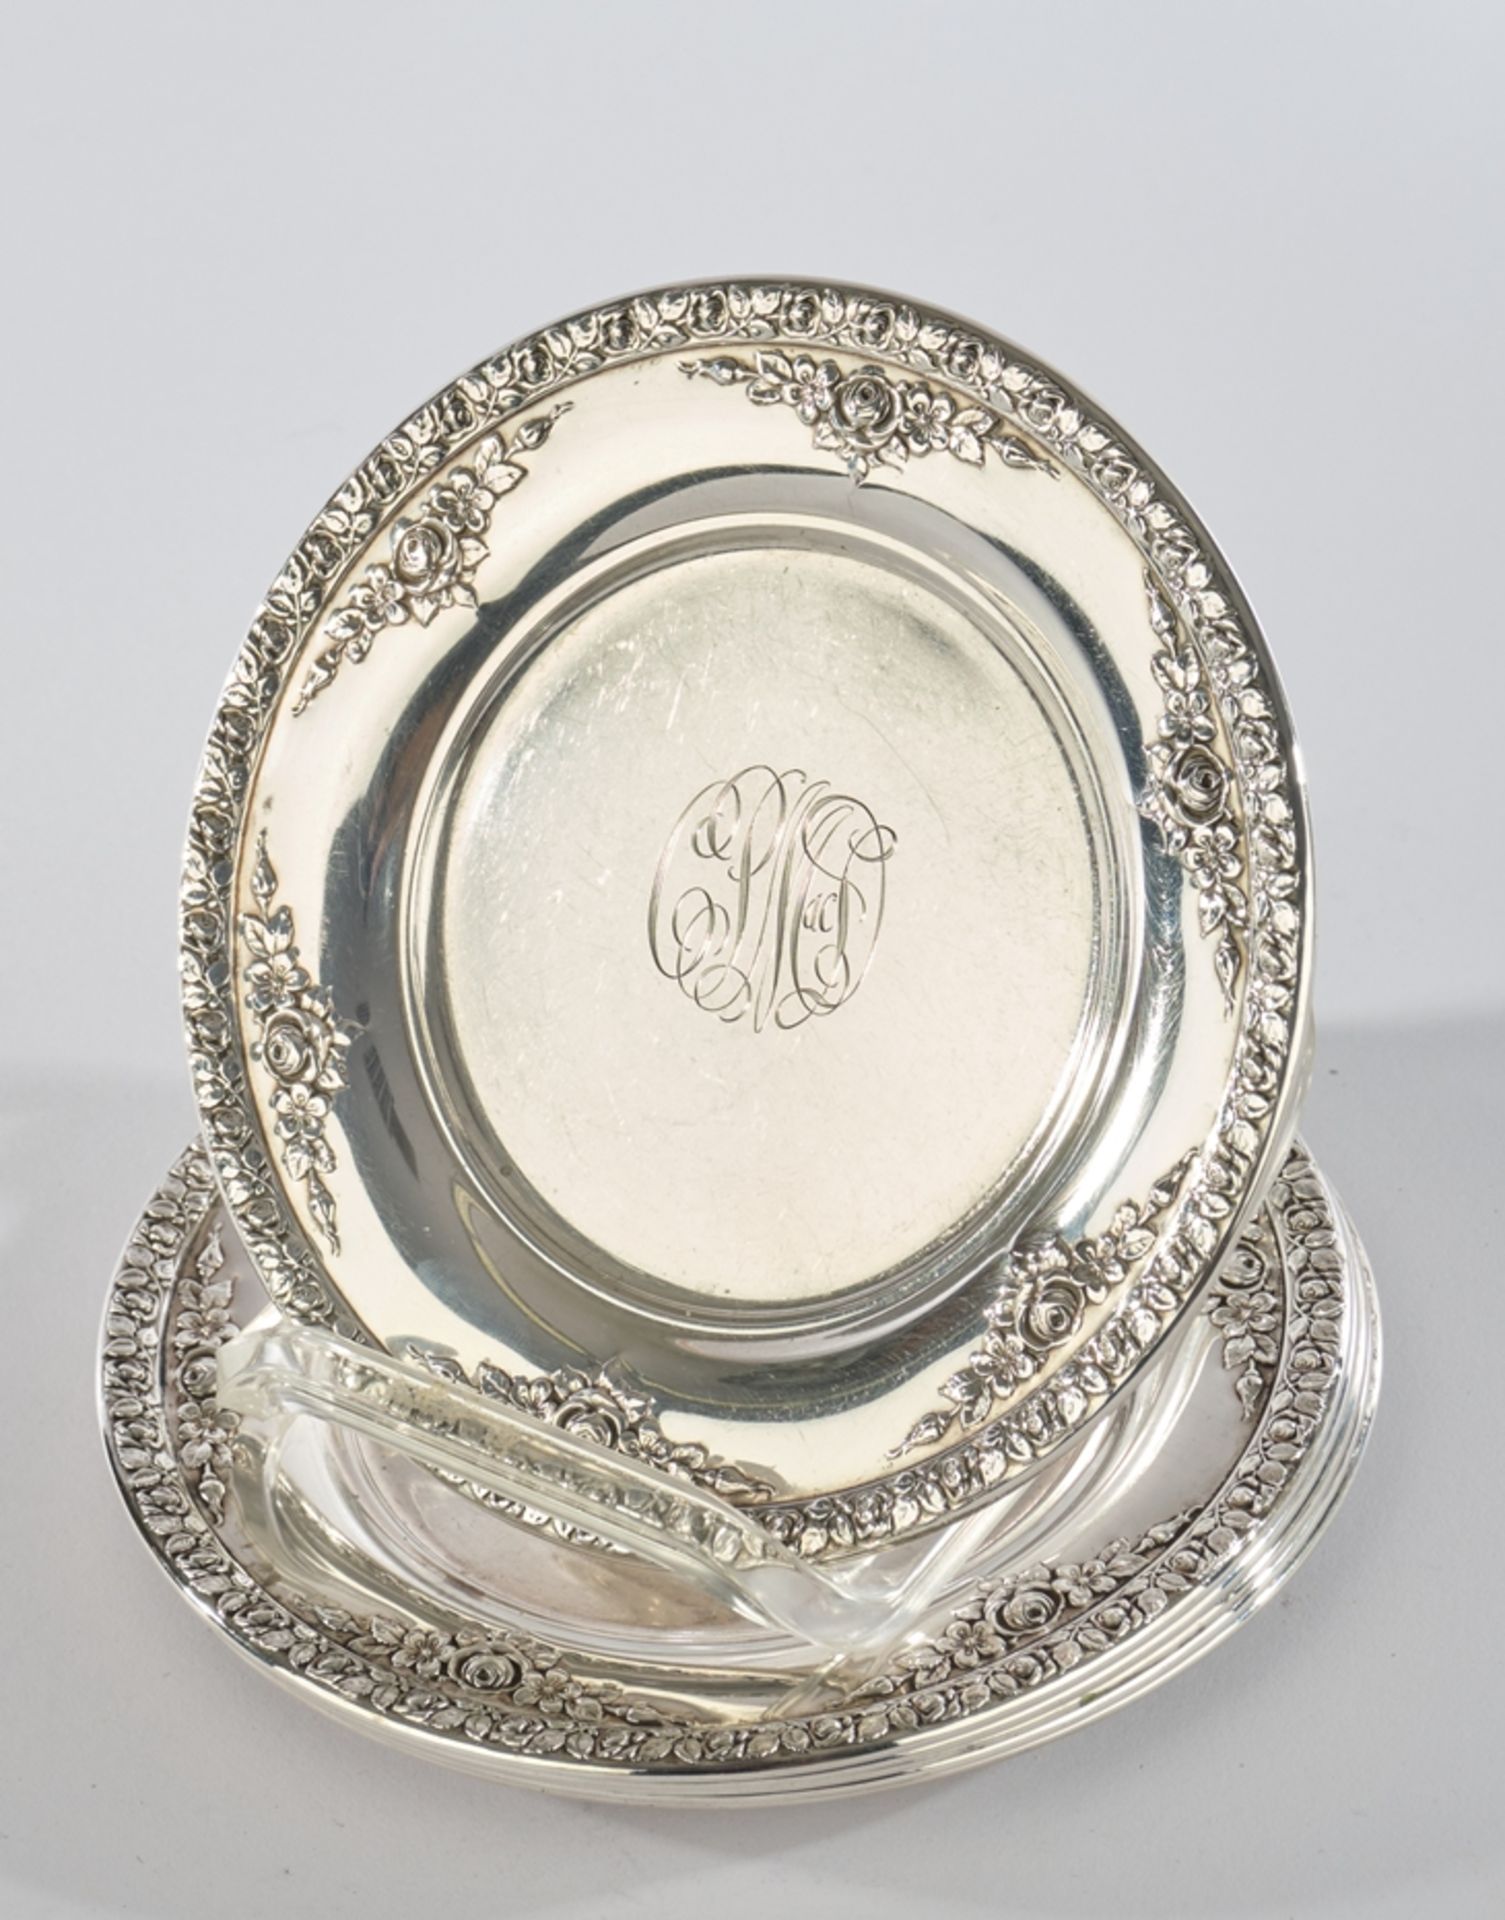 6 Teller, Silber 925, Wallace, Dekor Normandie, Rosenrelief, glatter Spiegel mit graviertem Monogra